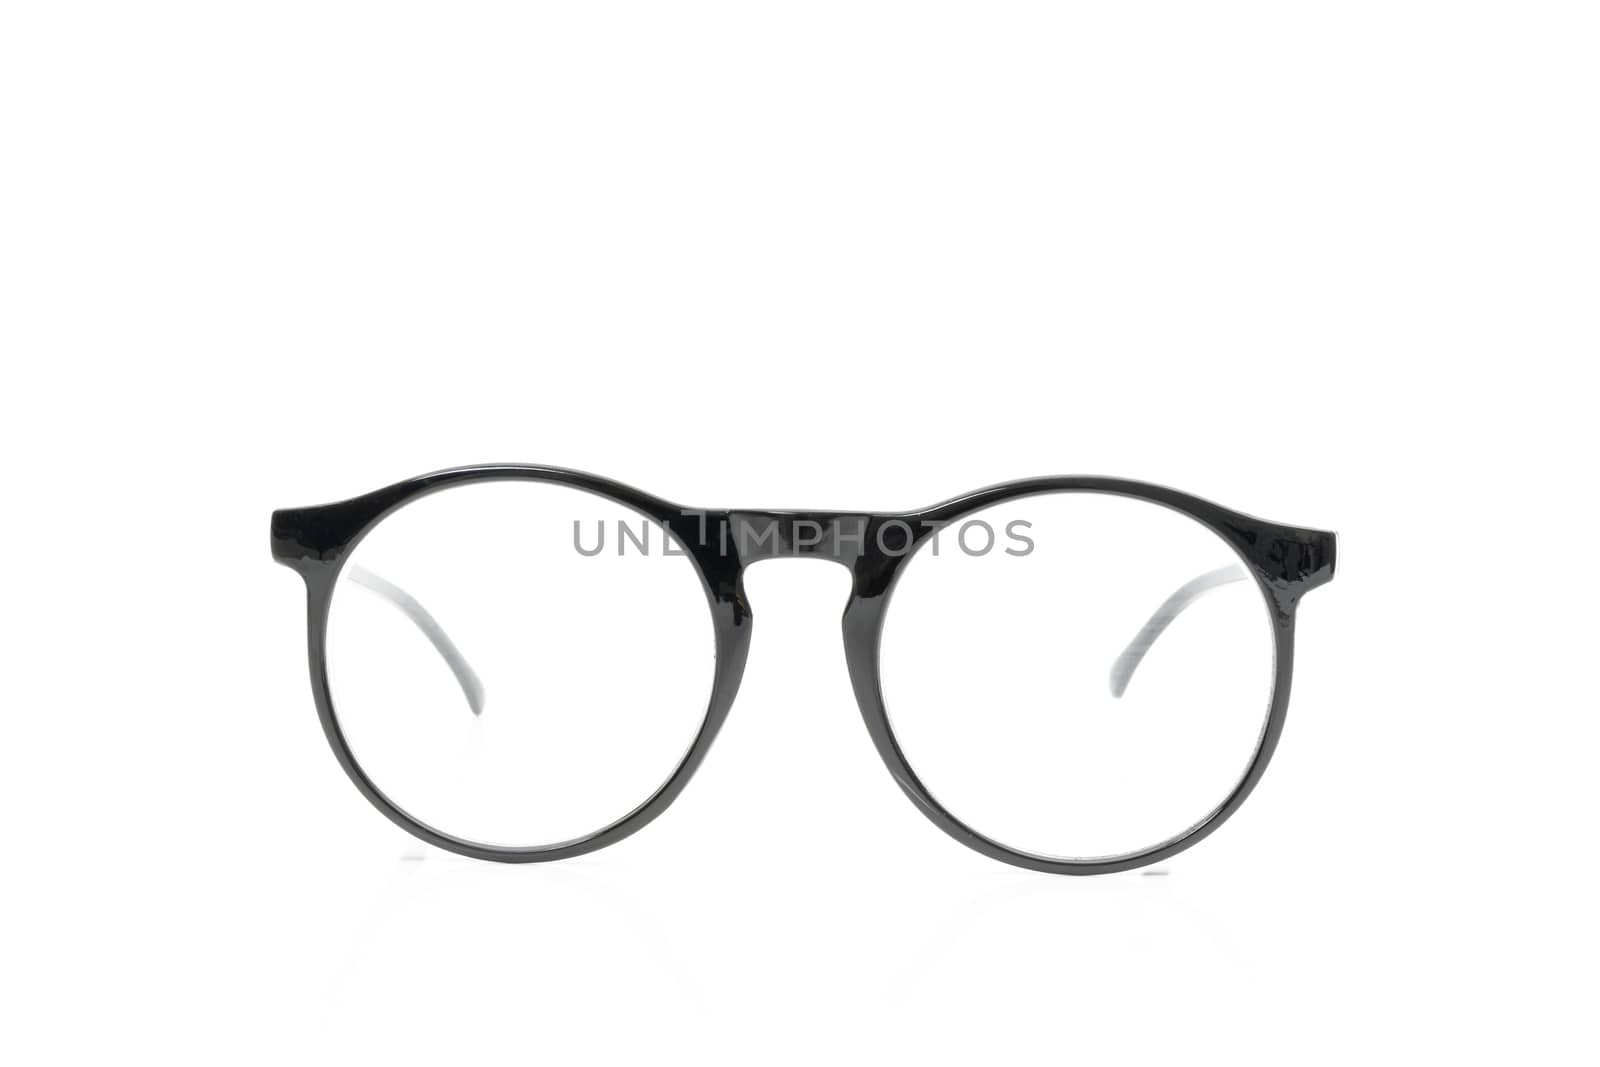 Glasses black on white background